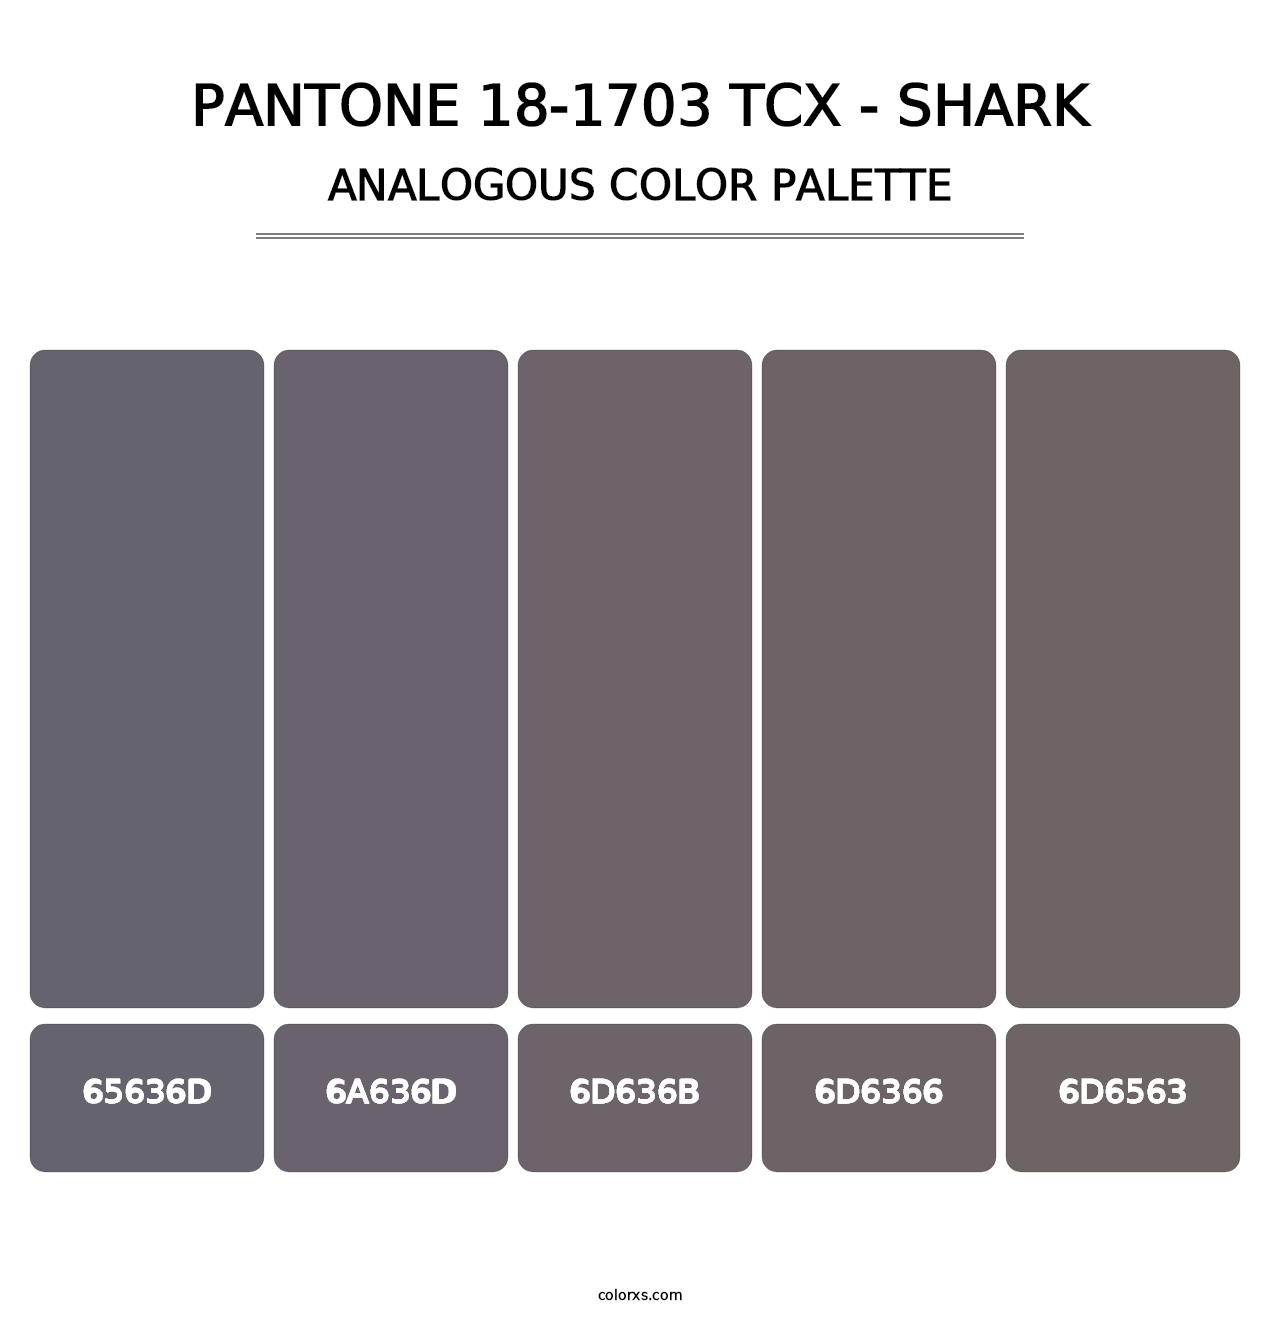 PANTONE 18-1703 TCX - Shark - Analogous Color Palette